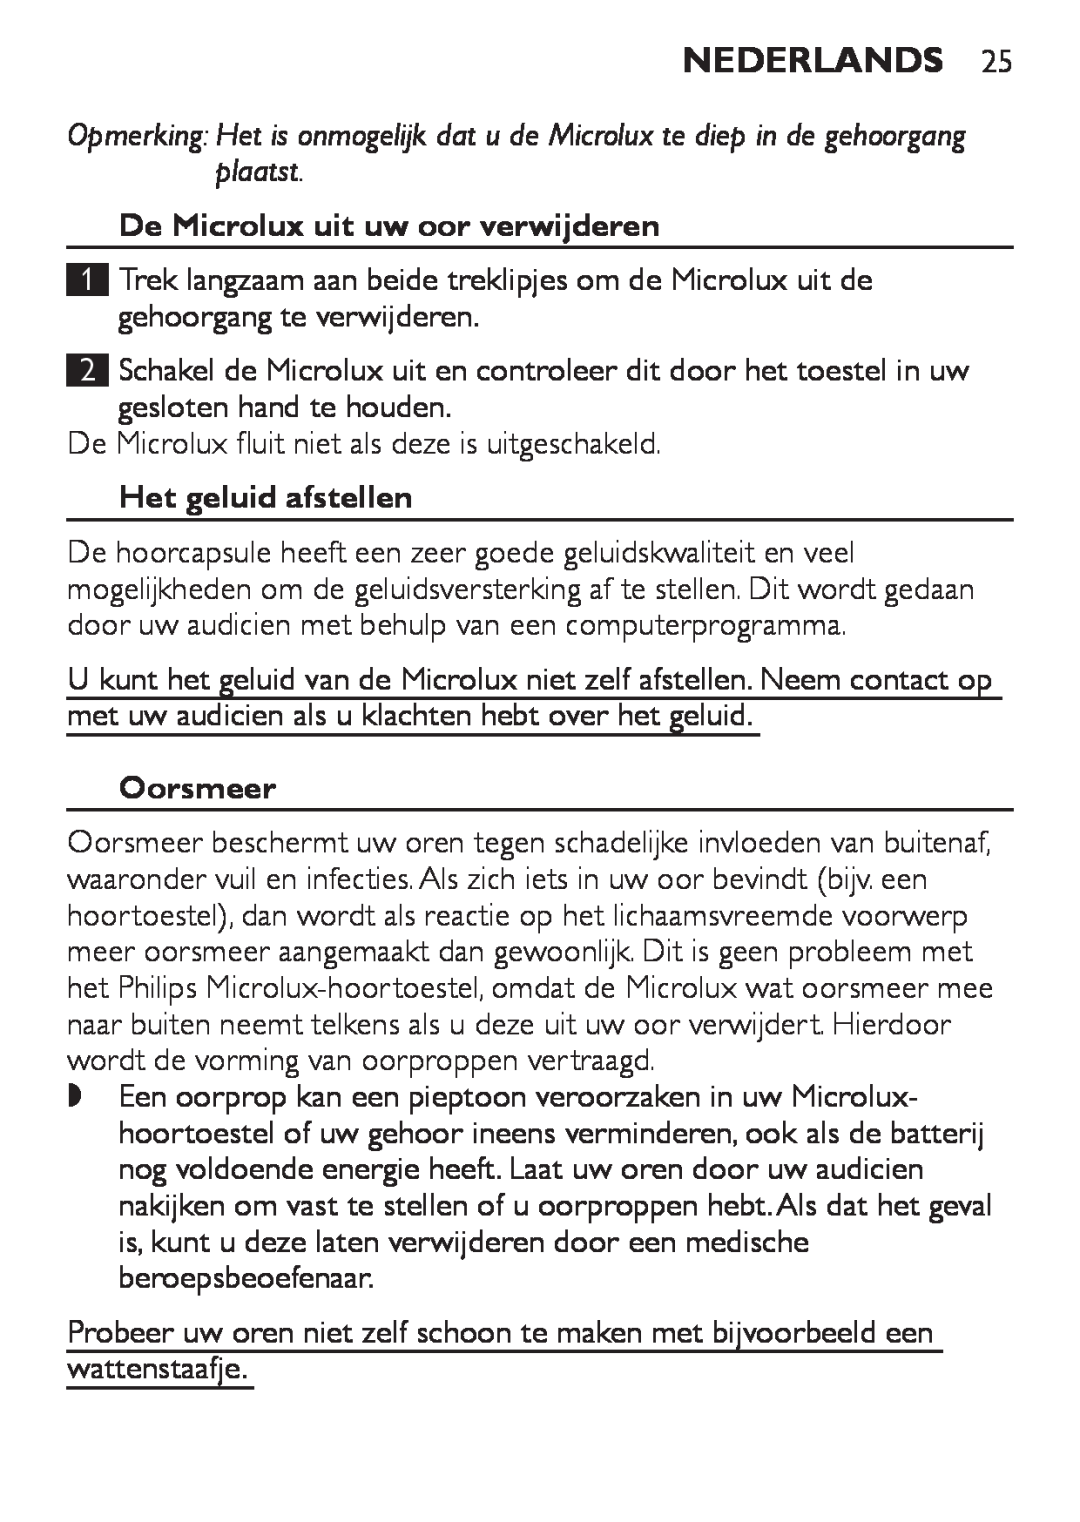 Philips HC8900 user manual Nederlands, De Microlux uit uw oor verwijderen, Het geluid afstellen, Oorsmeer 